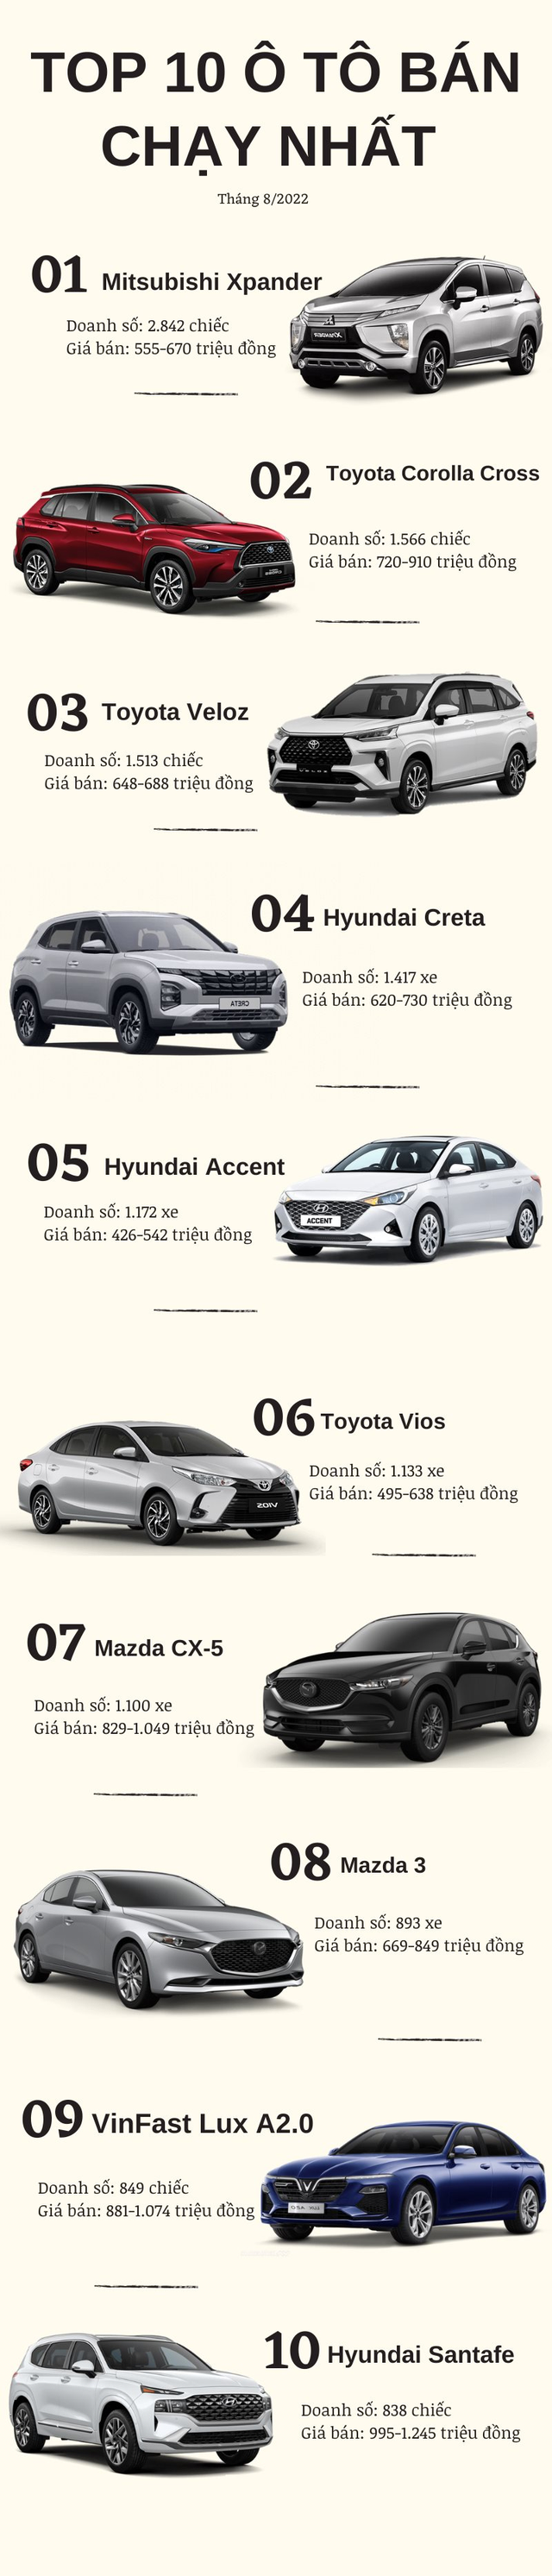 Top 10 ô tô bán chạy nhất tháng 8/2022: VinFast dù tuyên bố ngừng sản xuất xe xăng nhưng Lux A2.0 vẫn lọt top